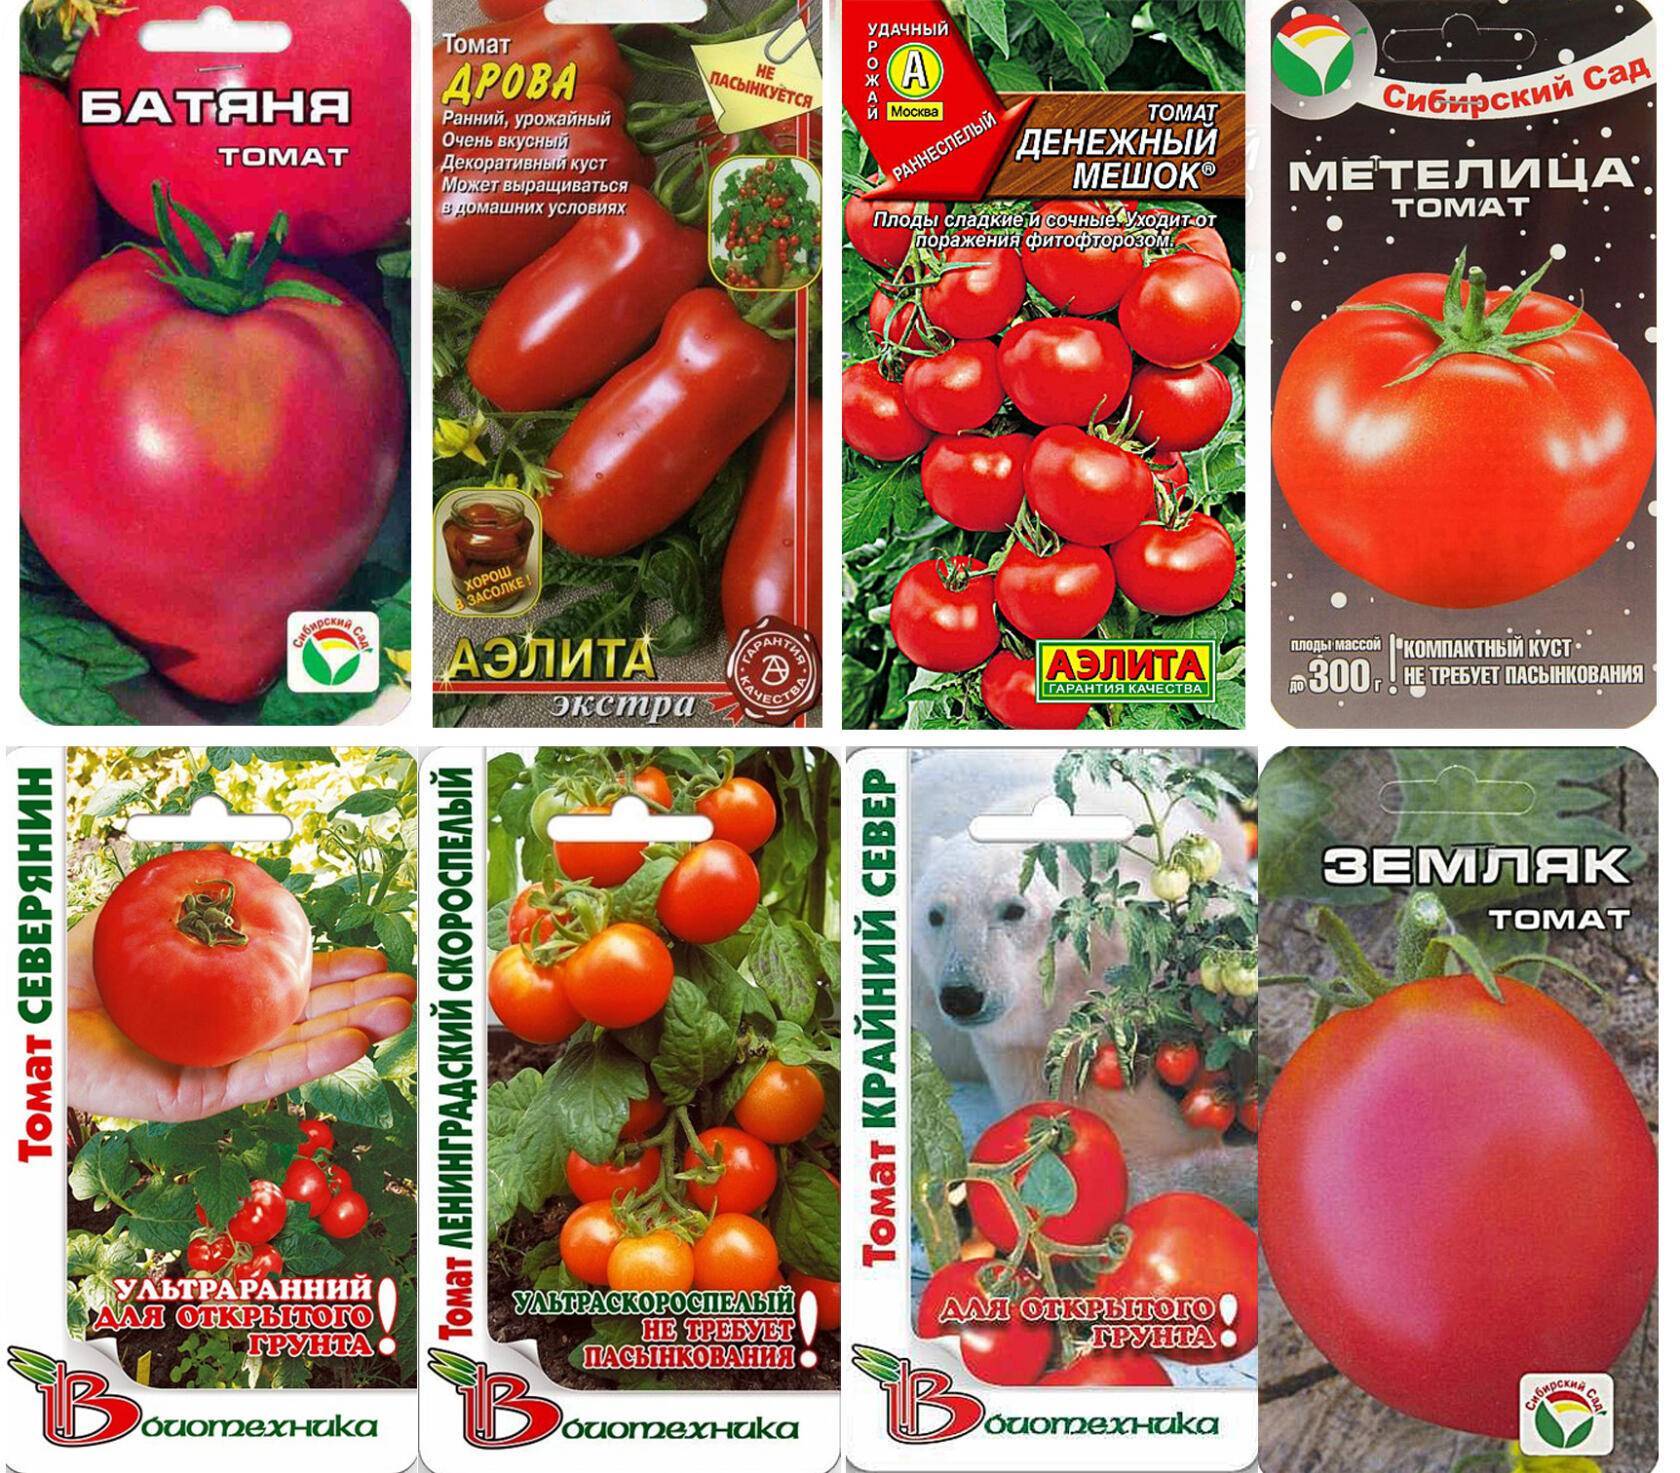 Ранние сорта помидоров для теплиц: список лучших